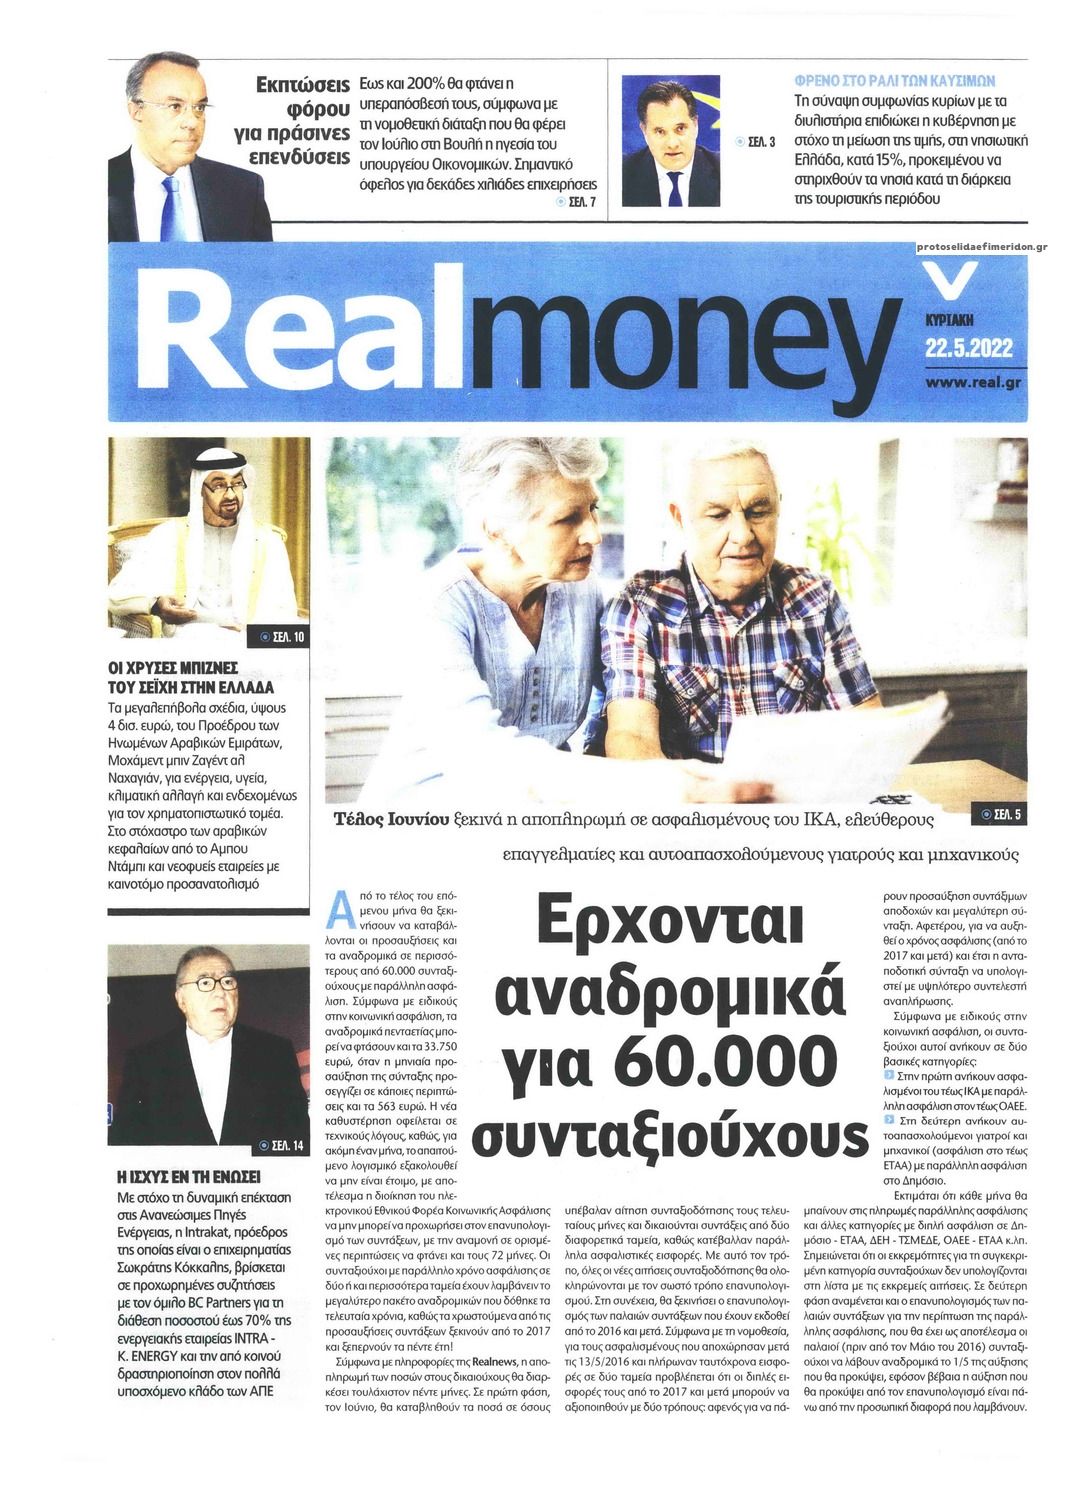 Πρωτοσέλιδο εφημερίδας REAL NEWS - MONEY